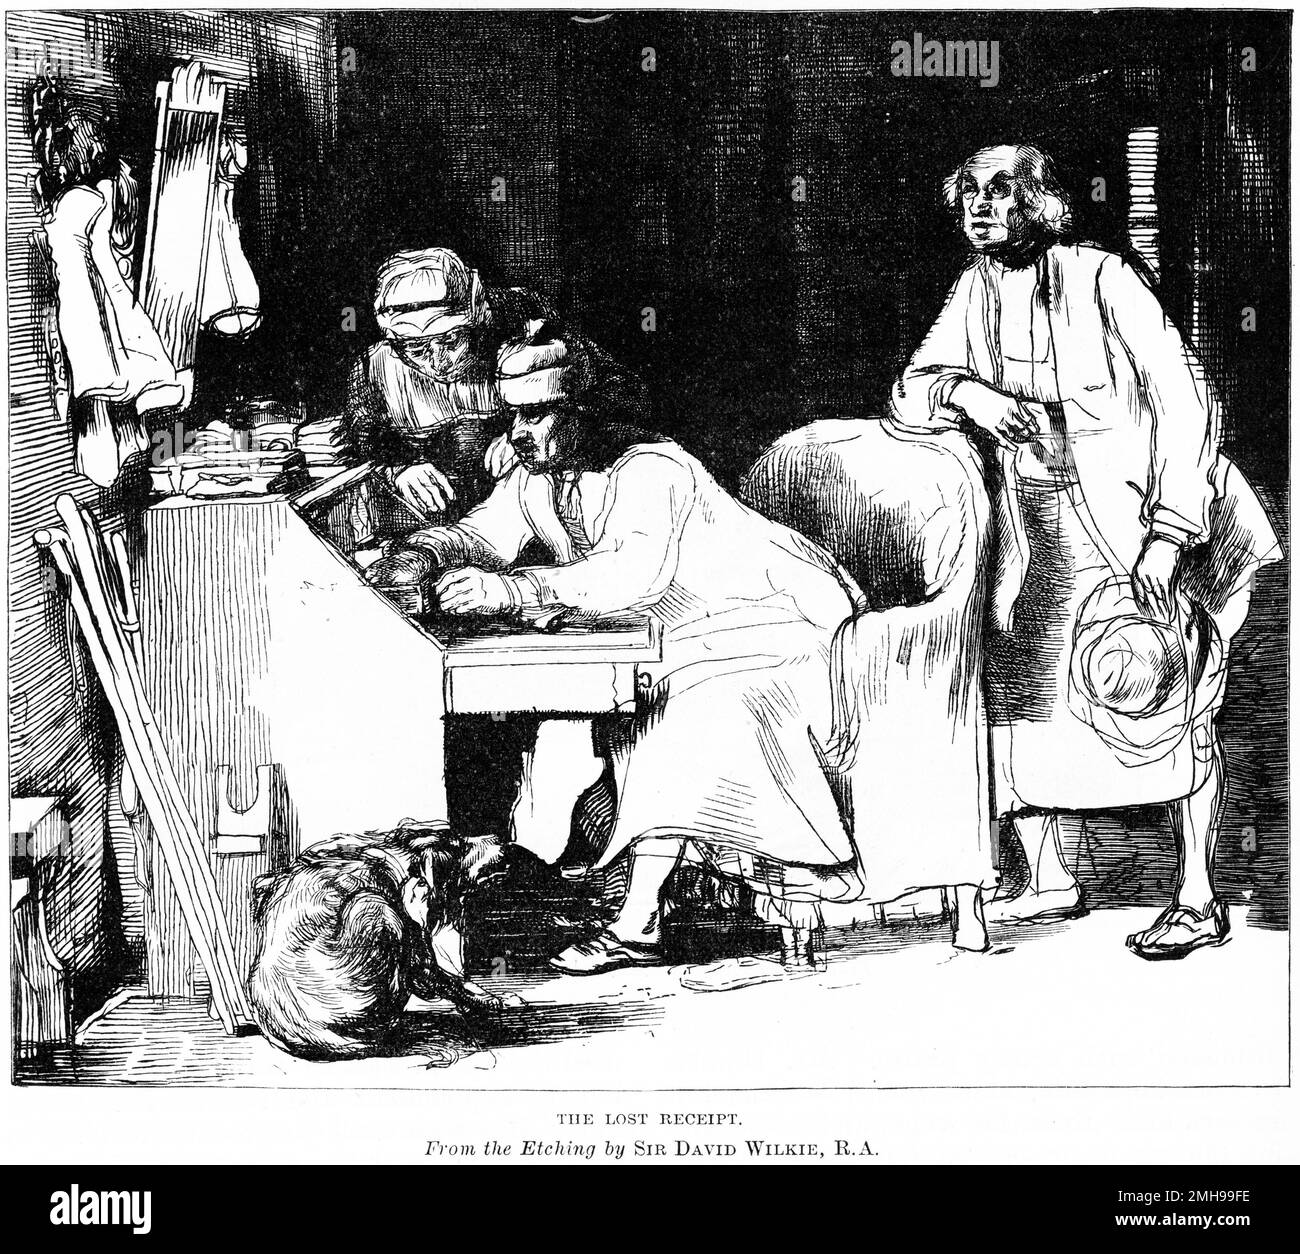 Gravure de trois hommes qui portent sur un grand livre à la recherche d'un reçu perdu, probablement tard la nuit, comme on semble être dans sa chemise de nuit, publié en 1884 Banque D'Images